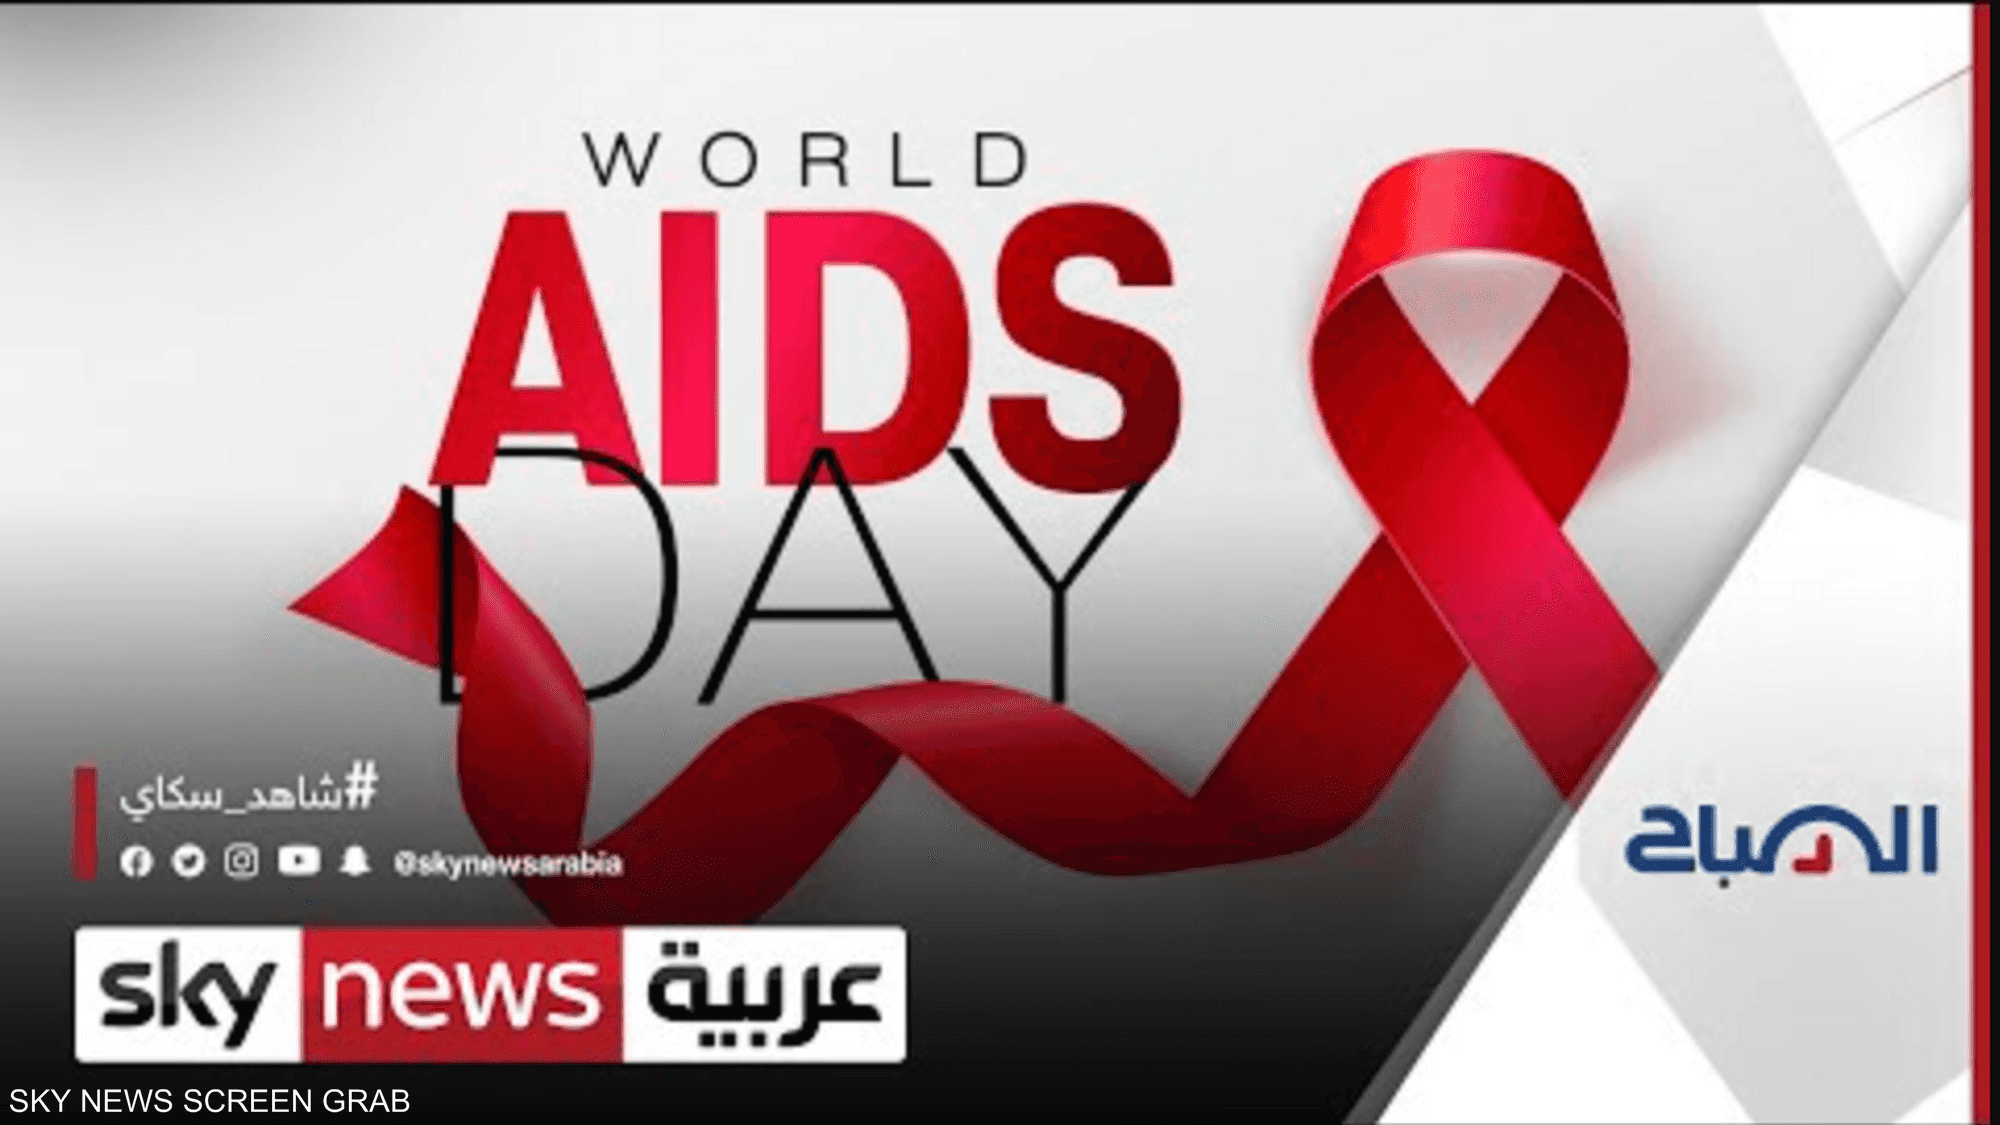 اليوم_العالمي_للإيدز يحلّ وسط فشل العالم في إبطاء حدته